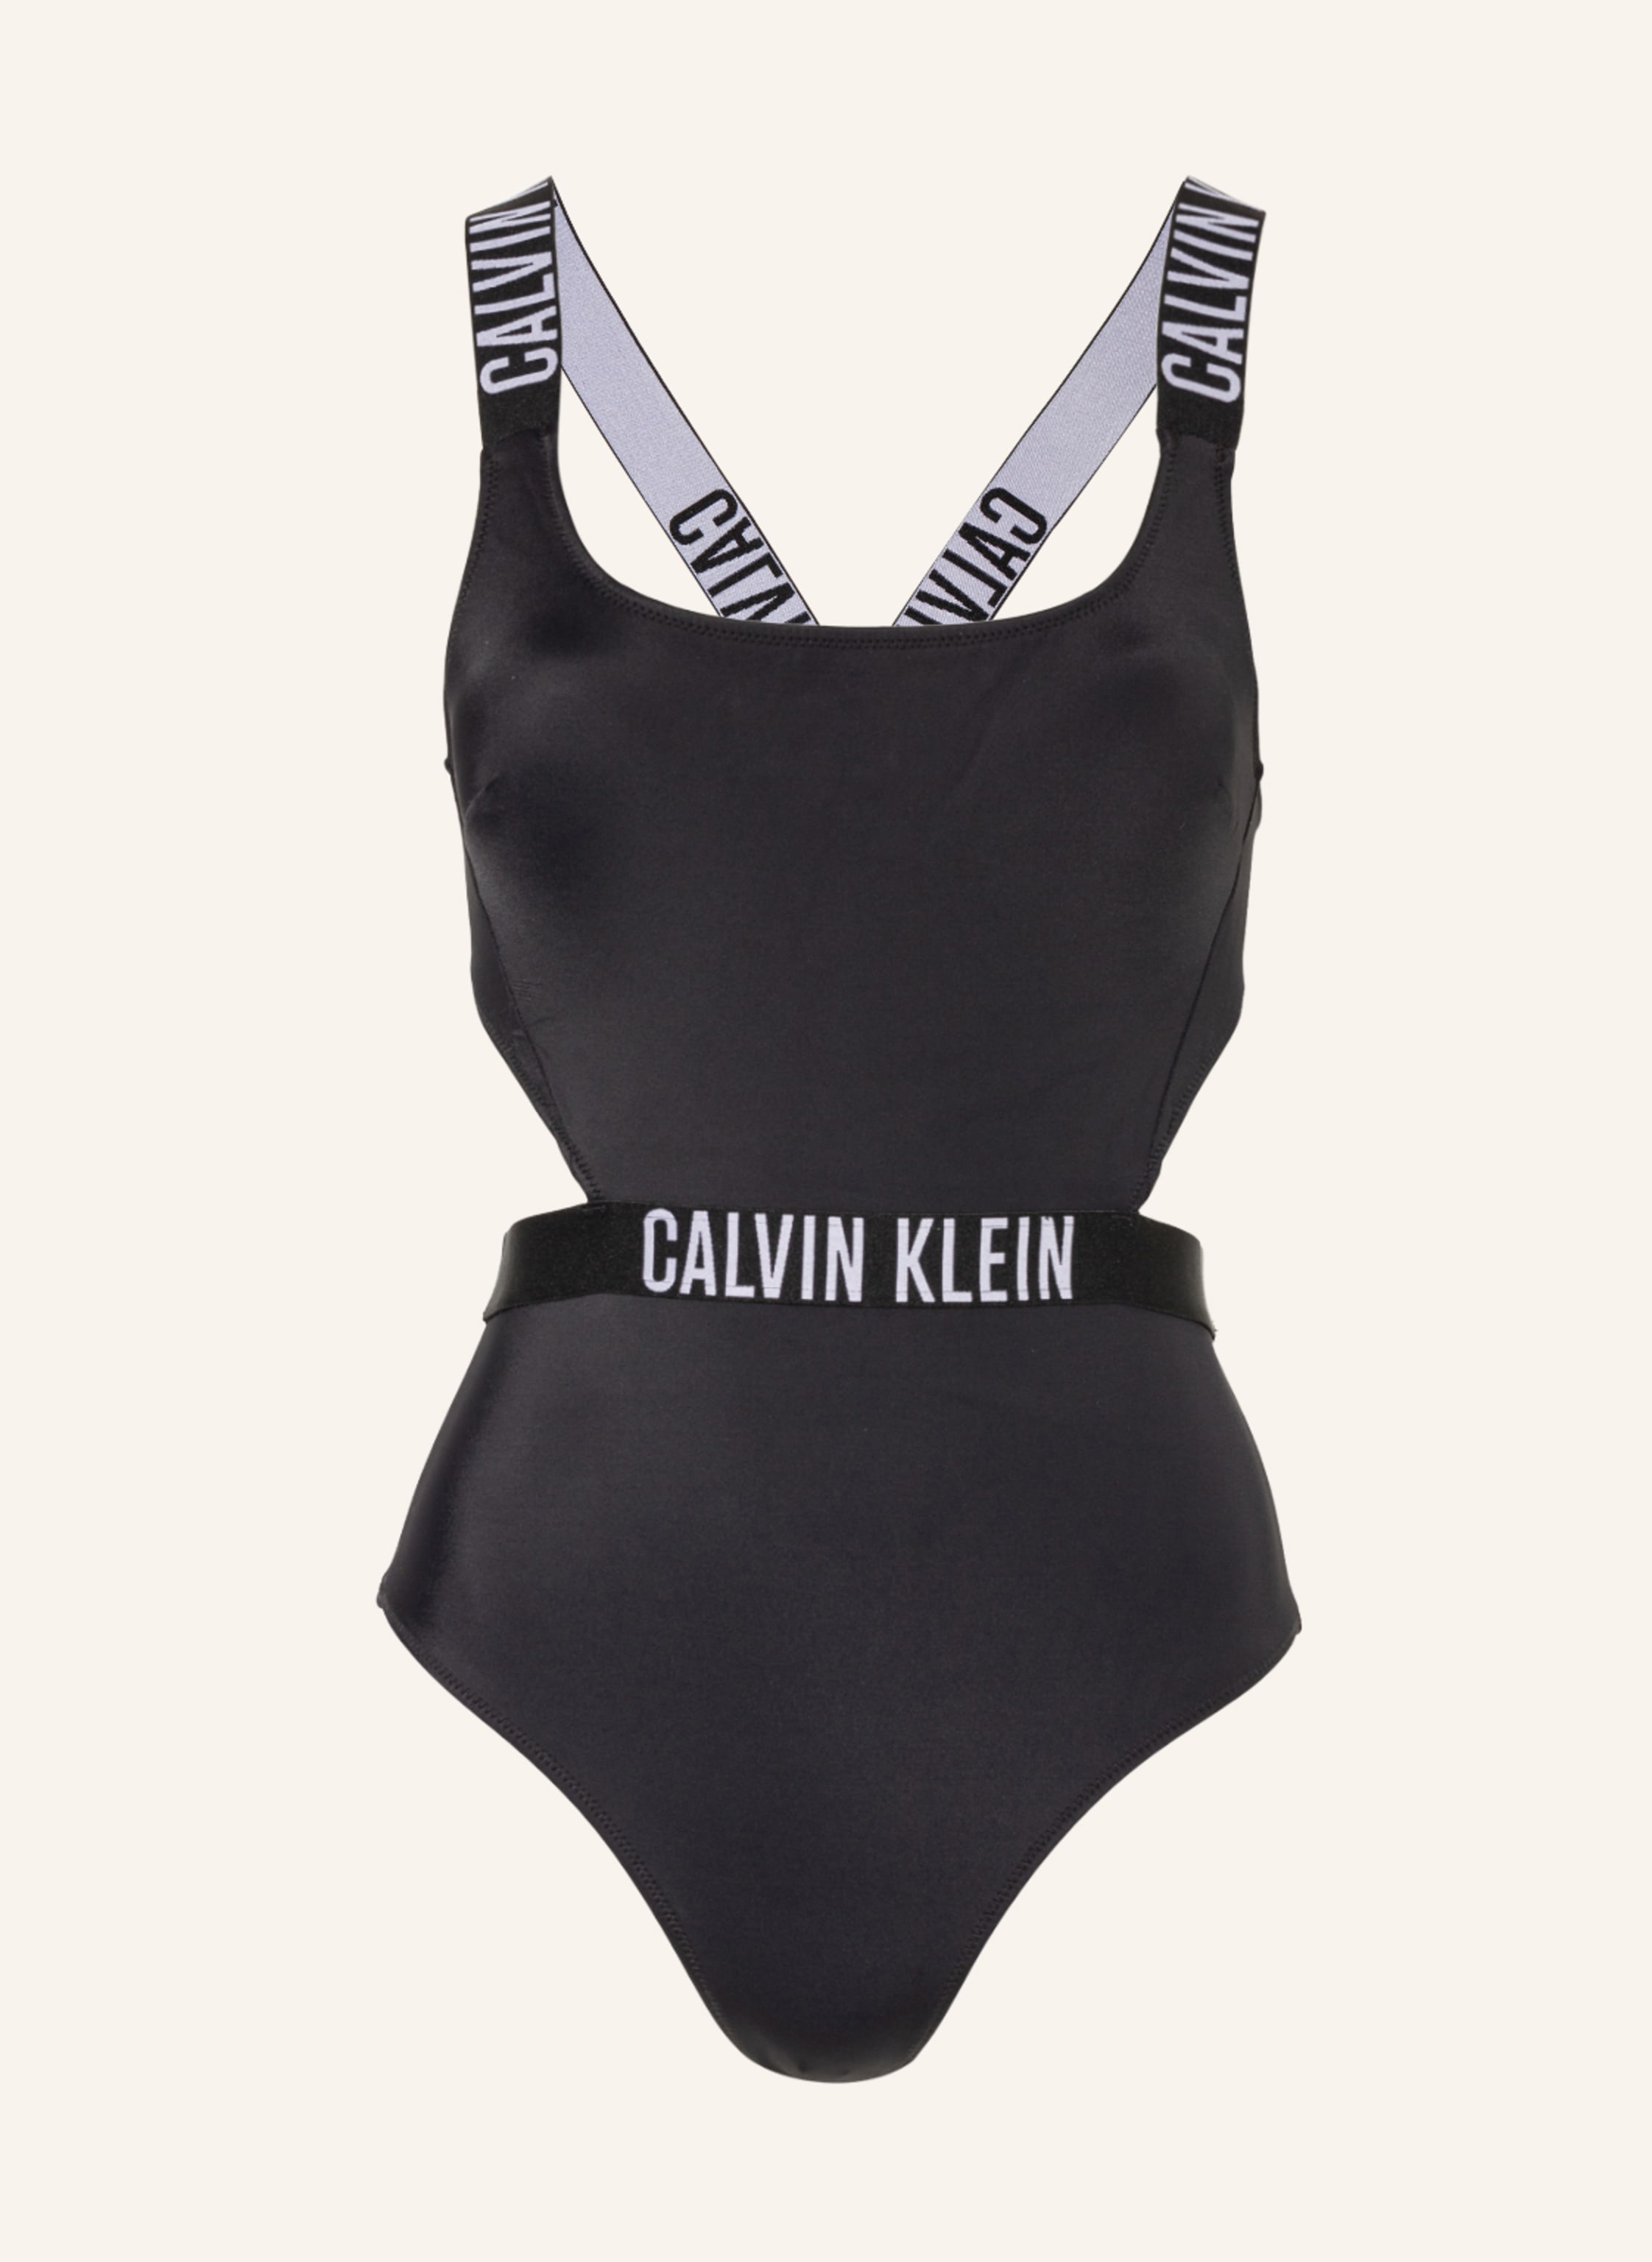 Calvin Klein Swimsuit INTENSE POWER in black | Breuninger